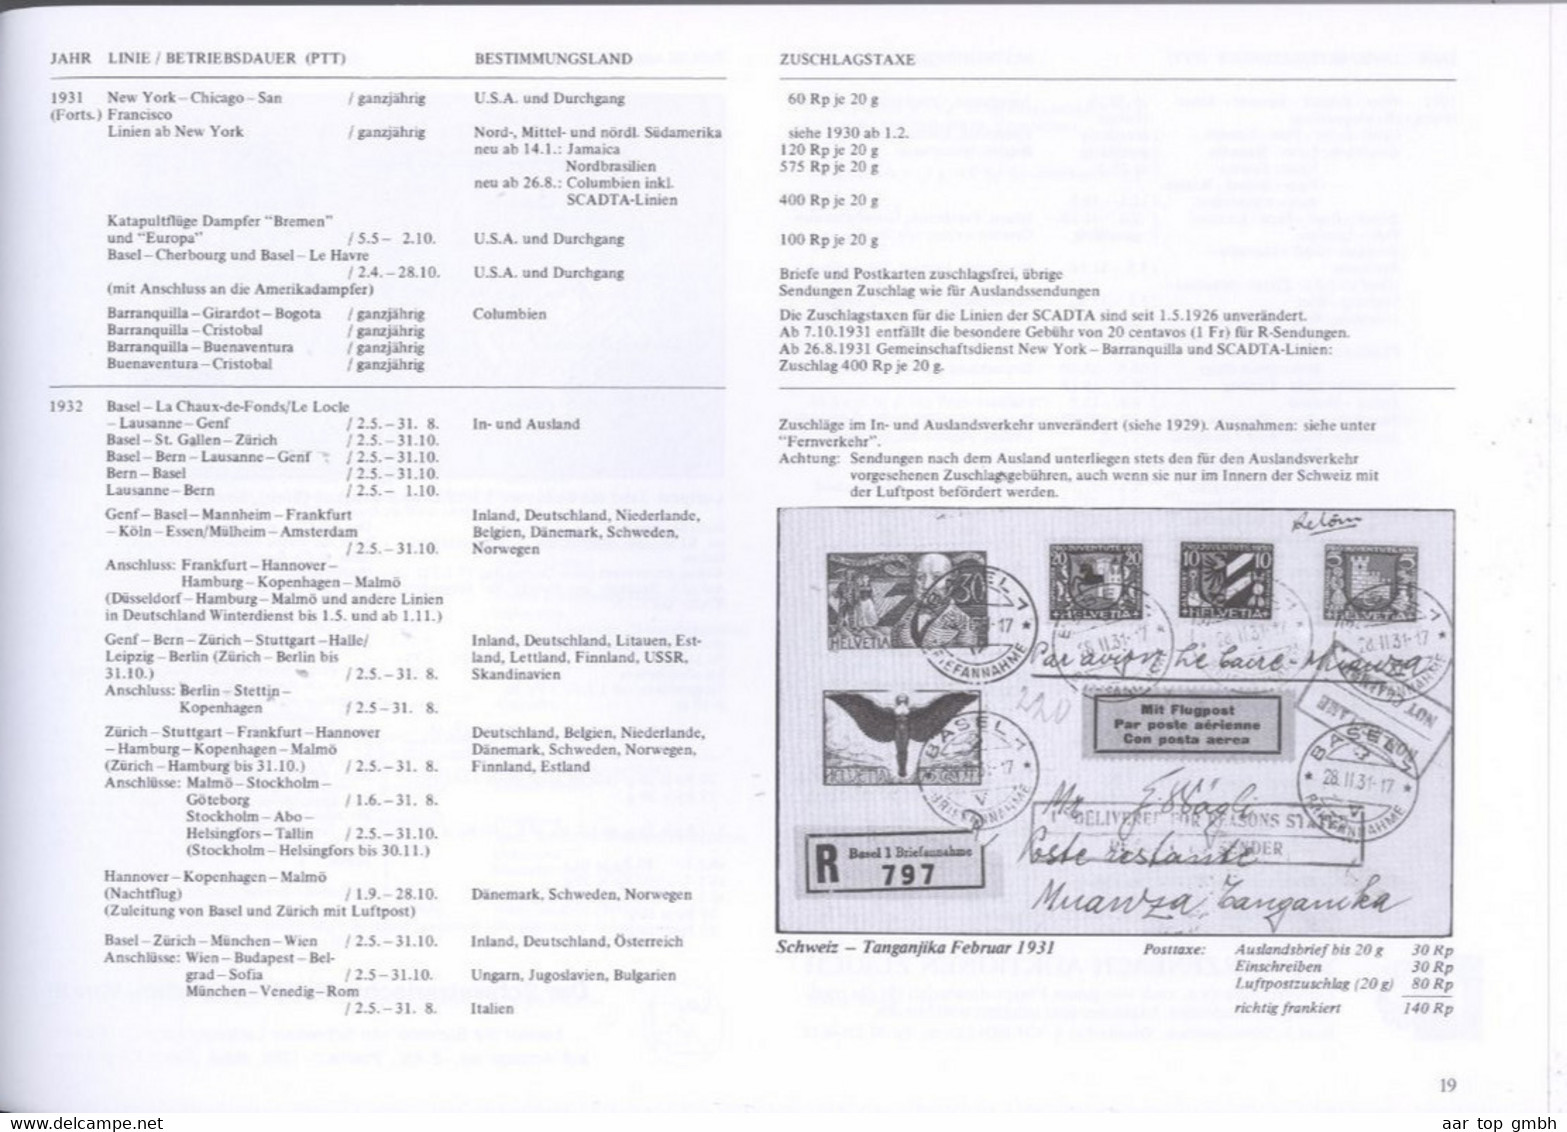 Schweiz, Die Schweizerischen Flugpost-Zuschlagstaxen Ab 1919; Roland F.Kohl 1997, 116 Seiten ~470gr. - Handbücher